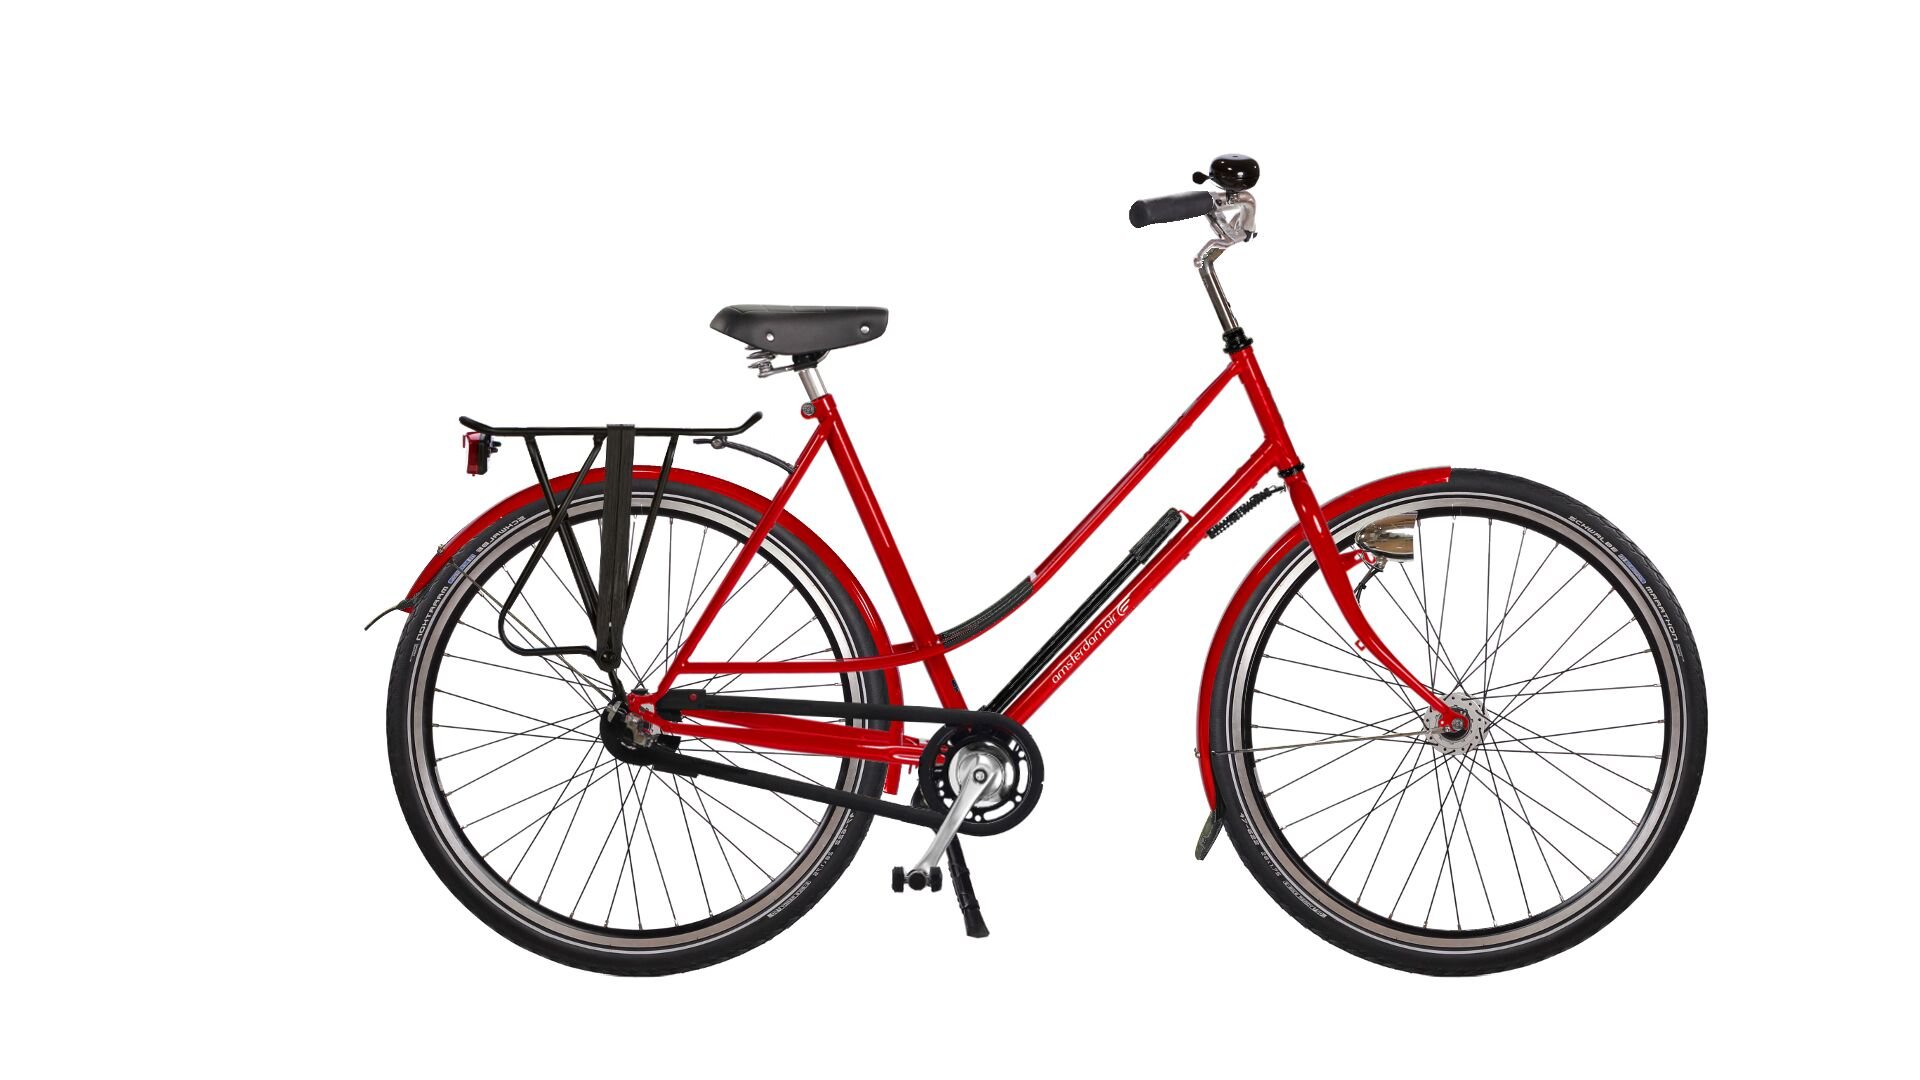 Configurateur du vélo hollandais Hirondelle Premium